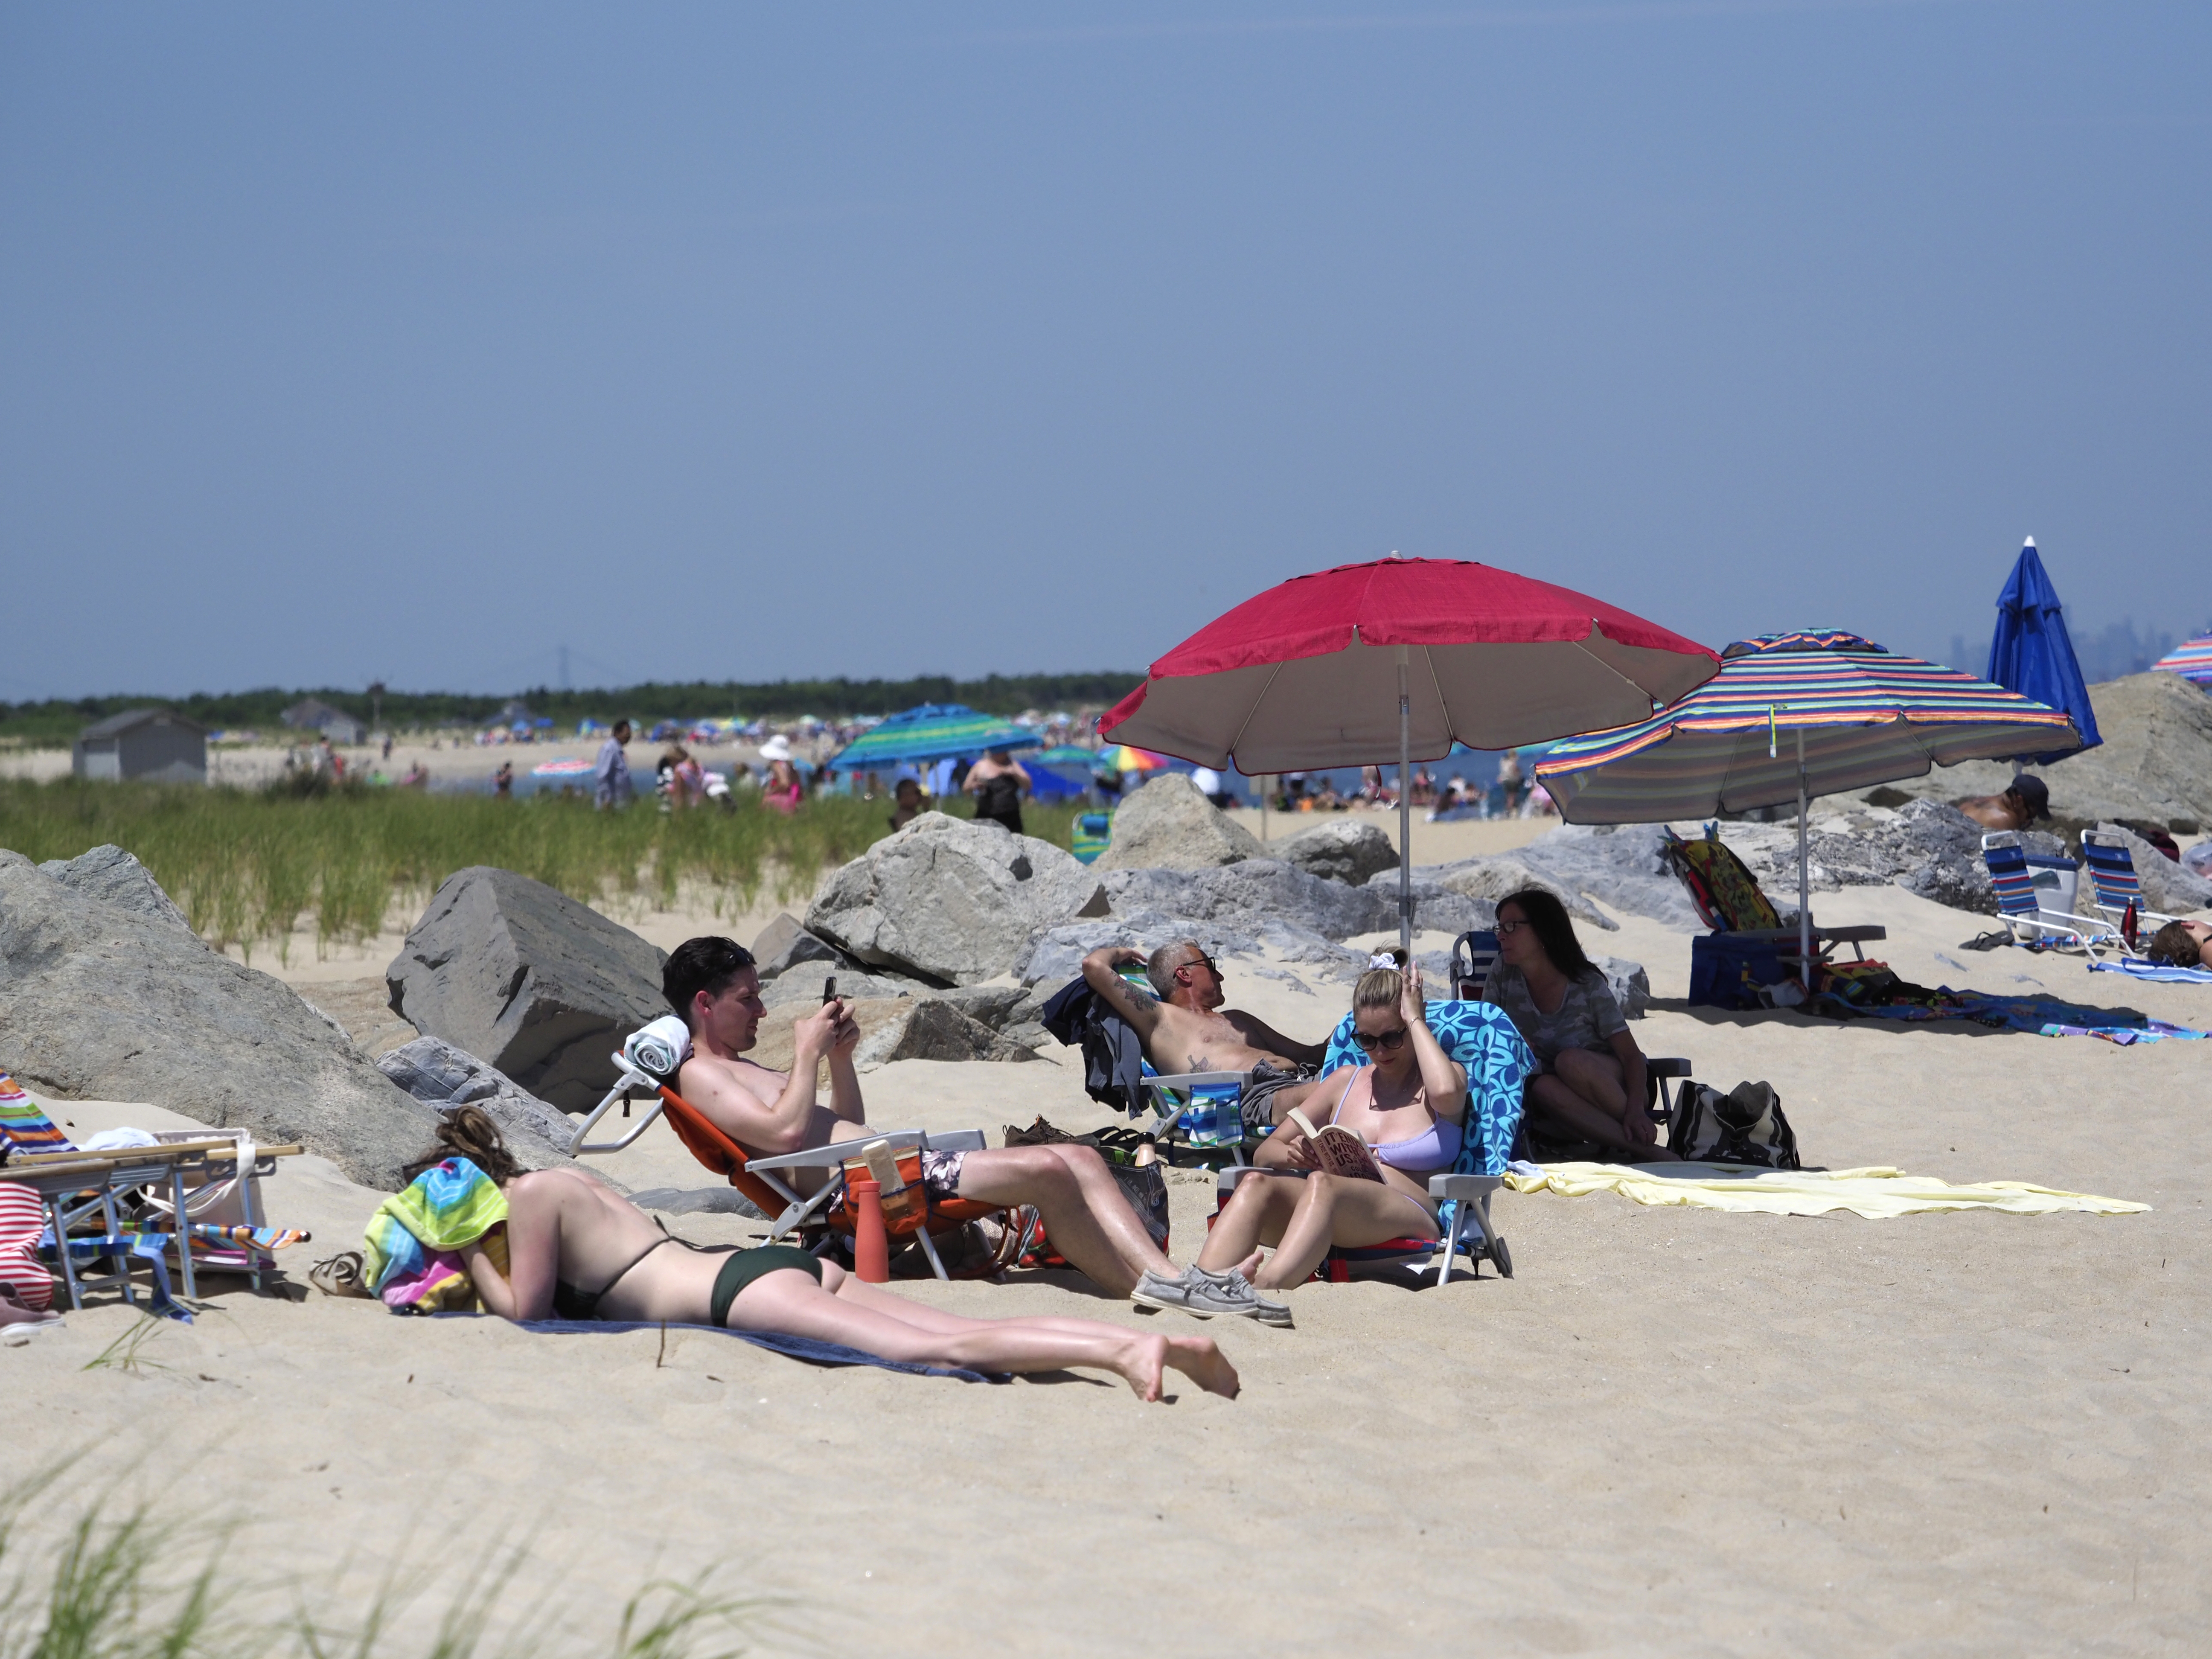 Mature Moms Nude Beach - Top nude beach list names New Jersey spot among best worldwide - silive.com